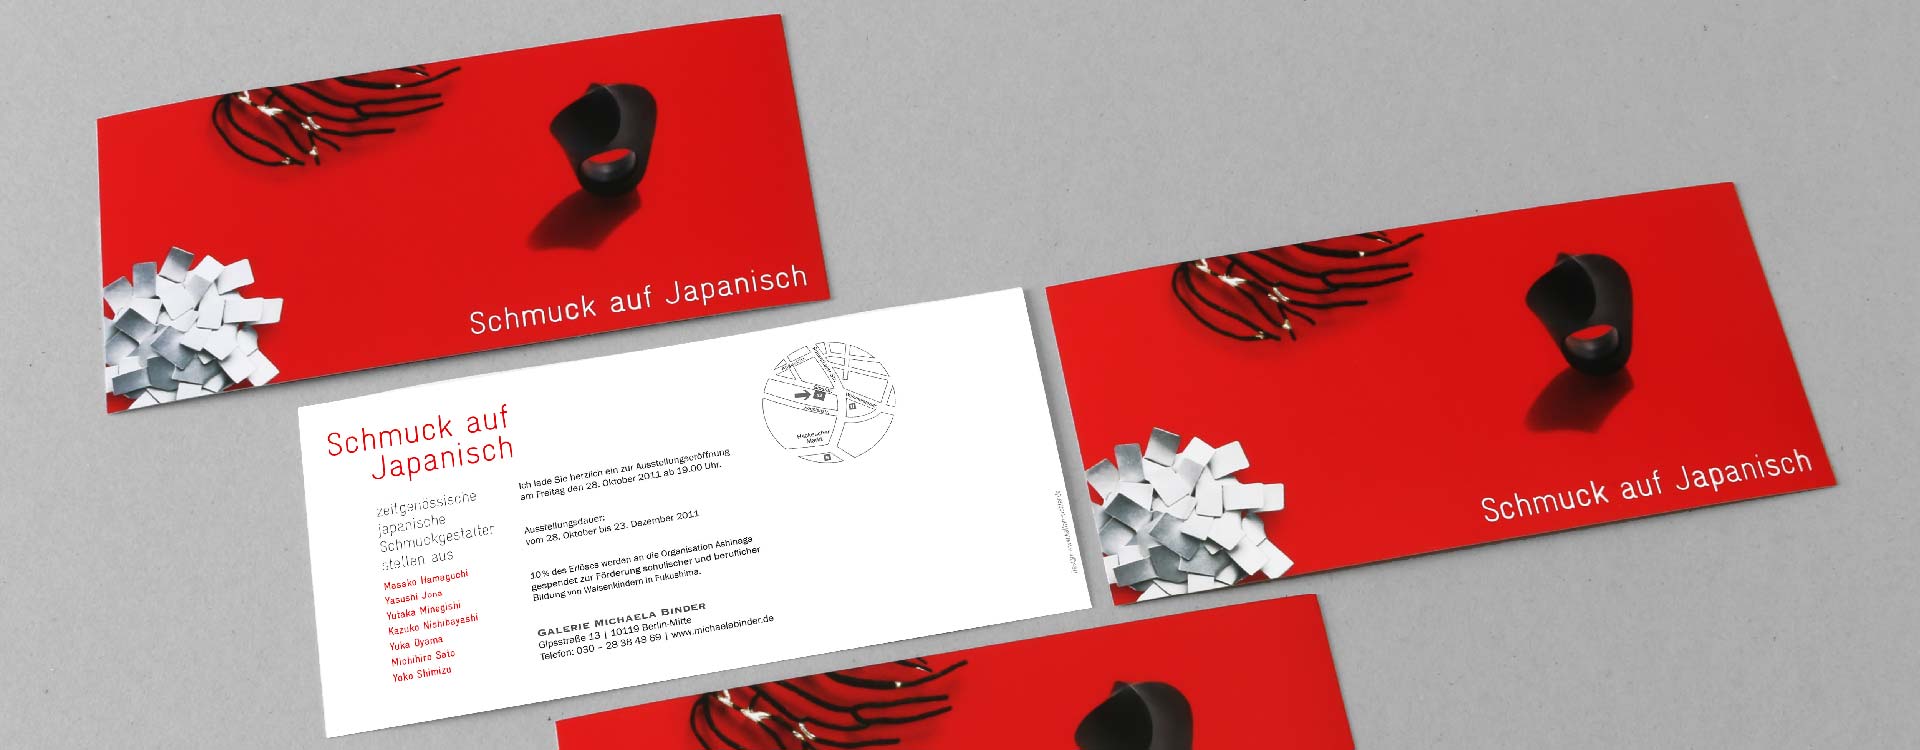 Einladungskarte zur Schmuckausstellung 2011 „Schmuck auf Japanisch“ in der Galerie Michaela Binder, Berlin; Design: Kattrin Richter | Büro für Grafikdesign